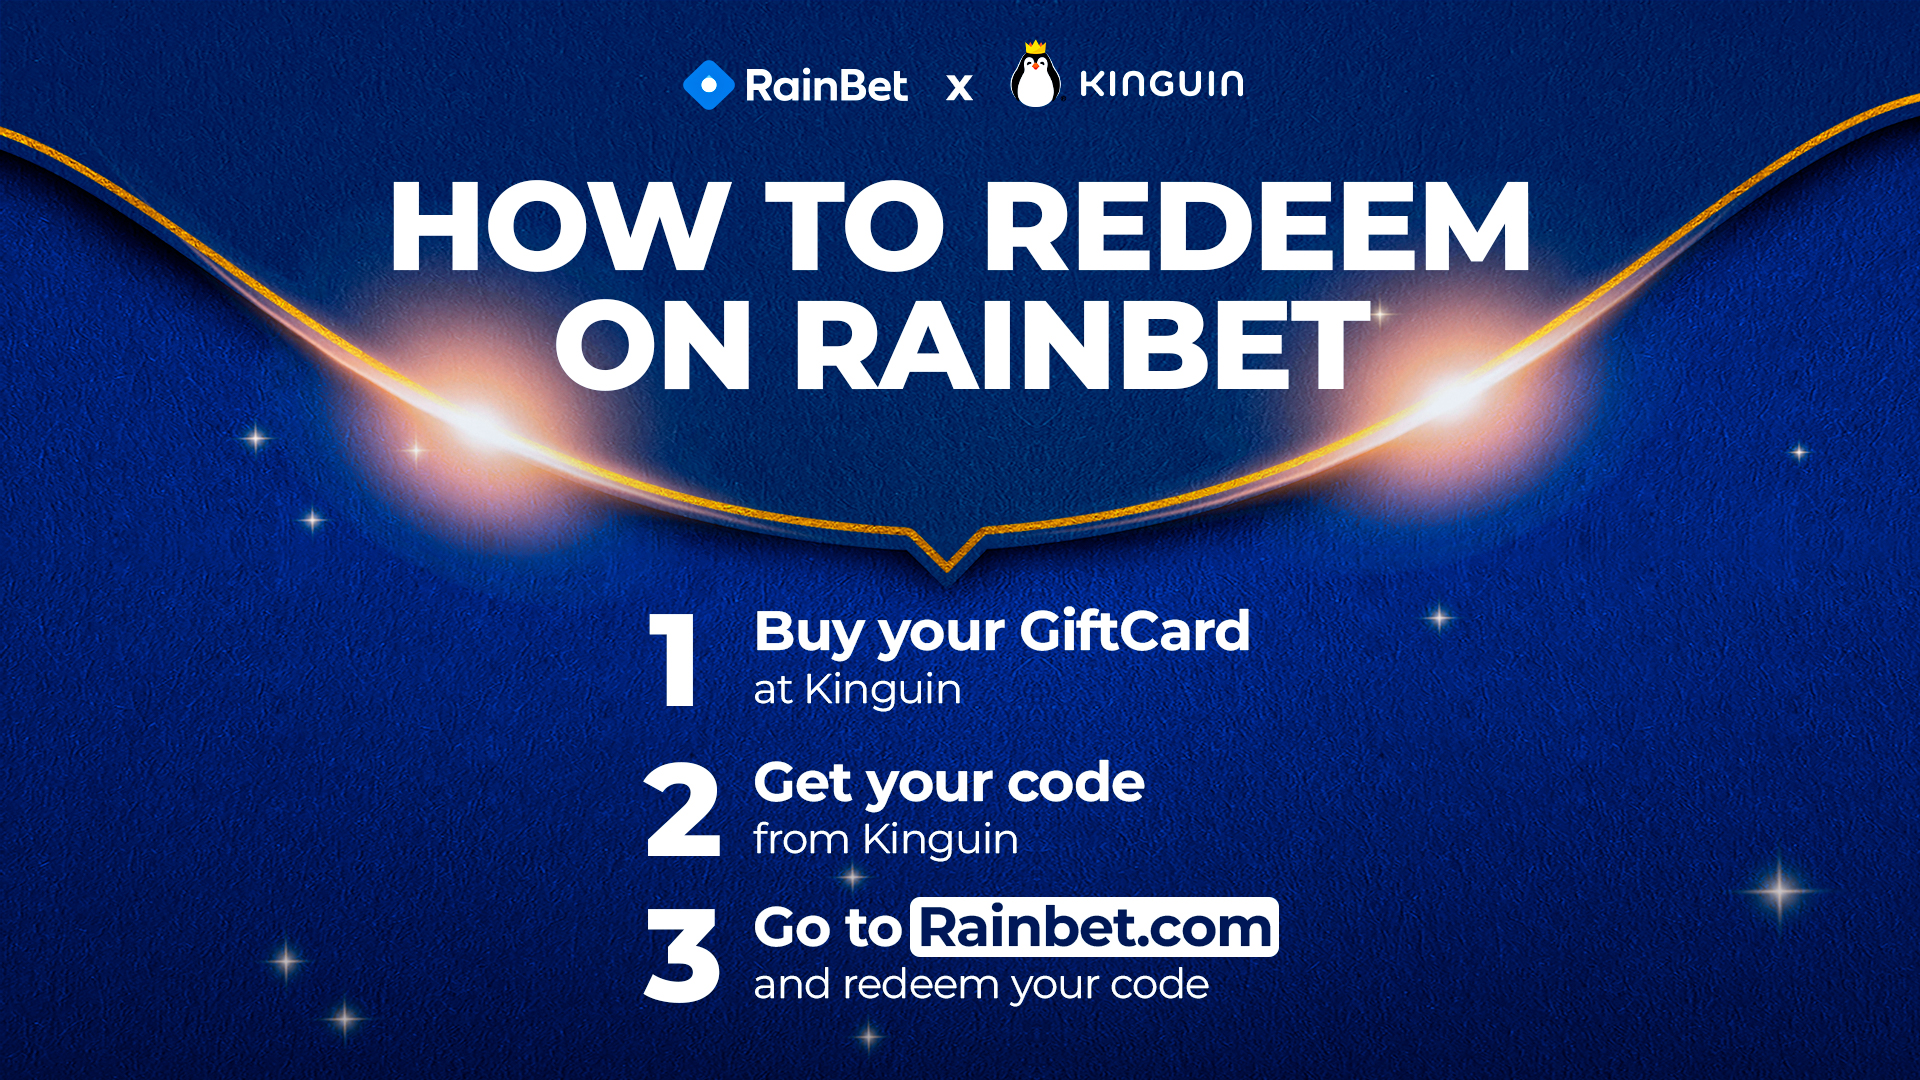 [$ 11.98] RainBet $10 Gift Card